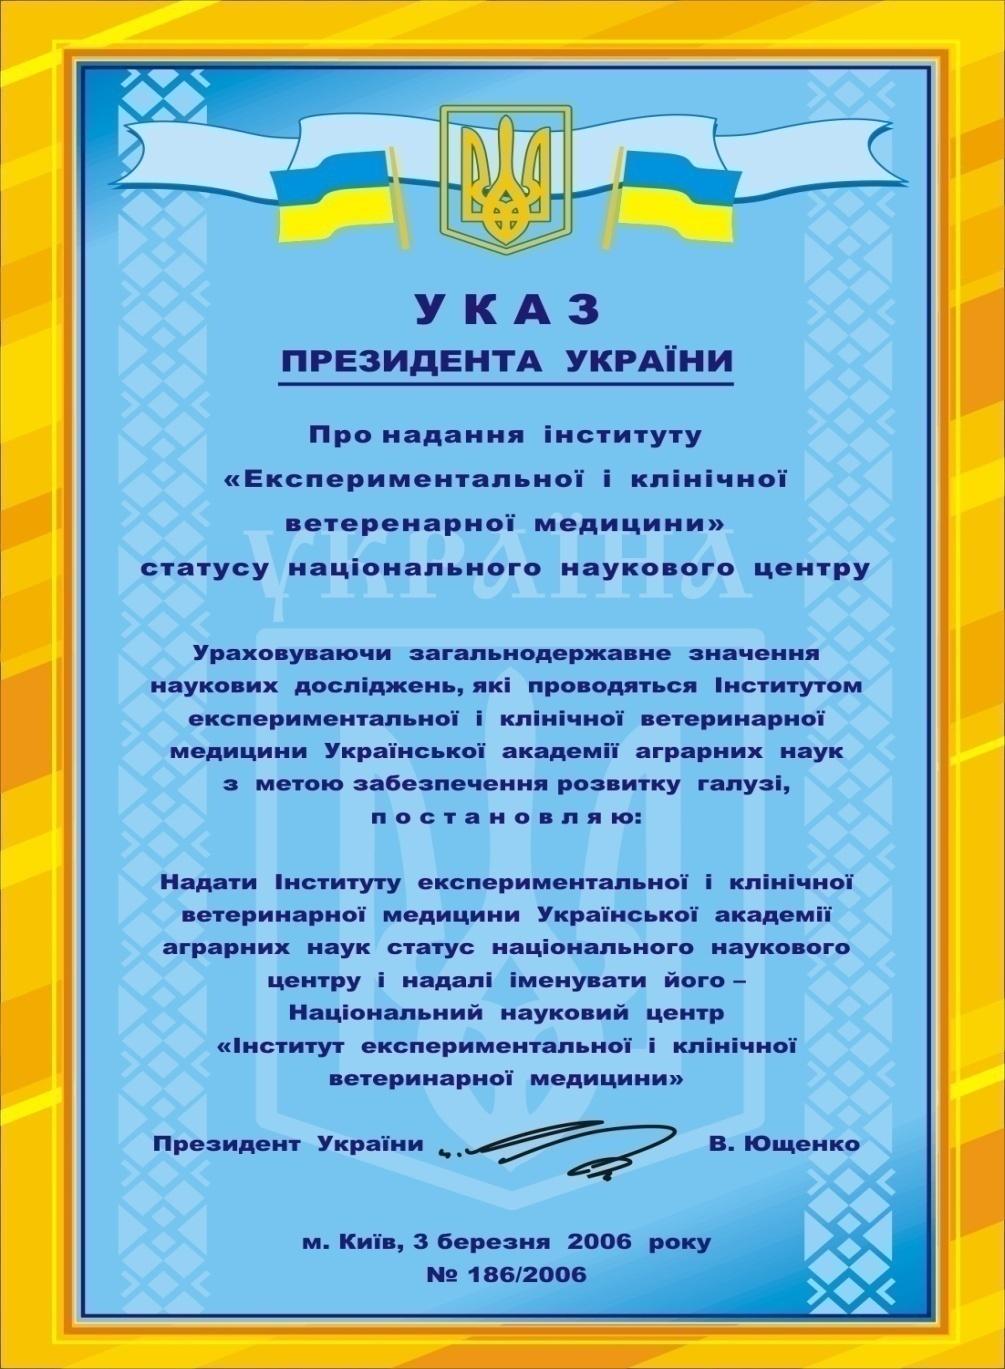 Decree of thepresident of Ukraine 186/2006 from 03.